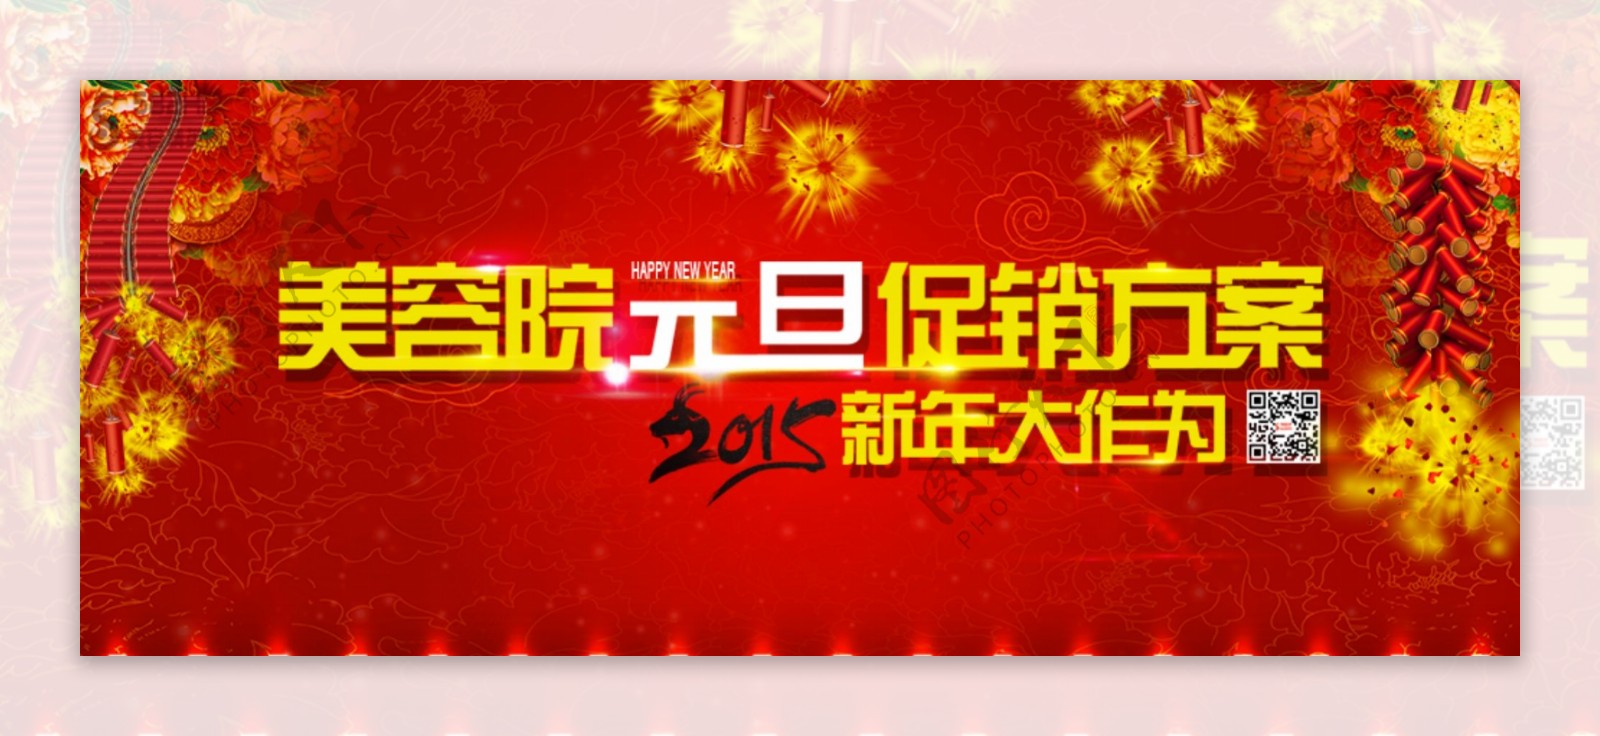 元旦节banner